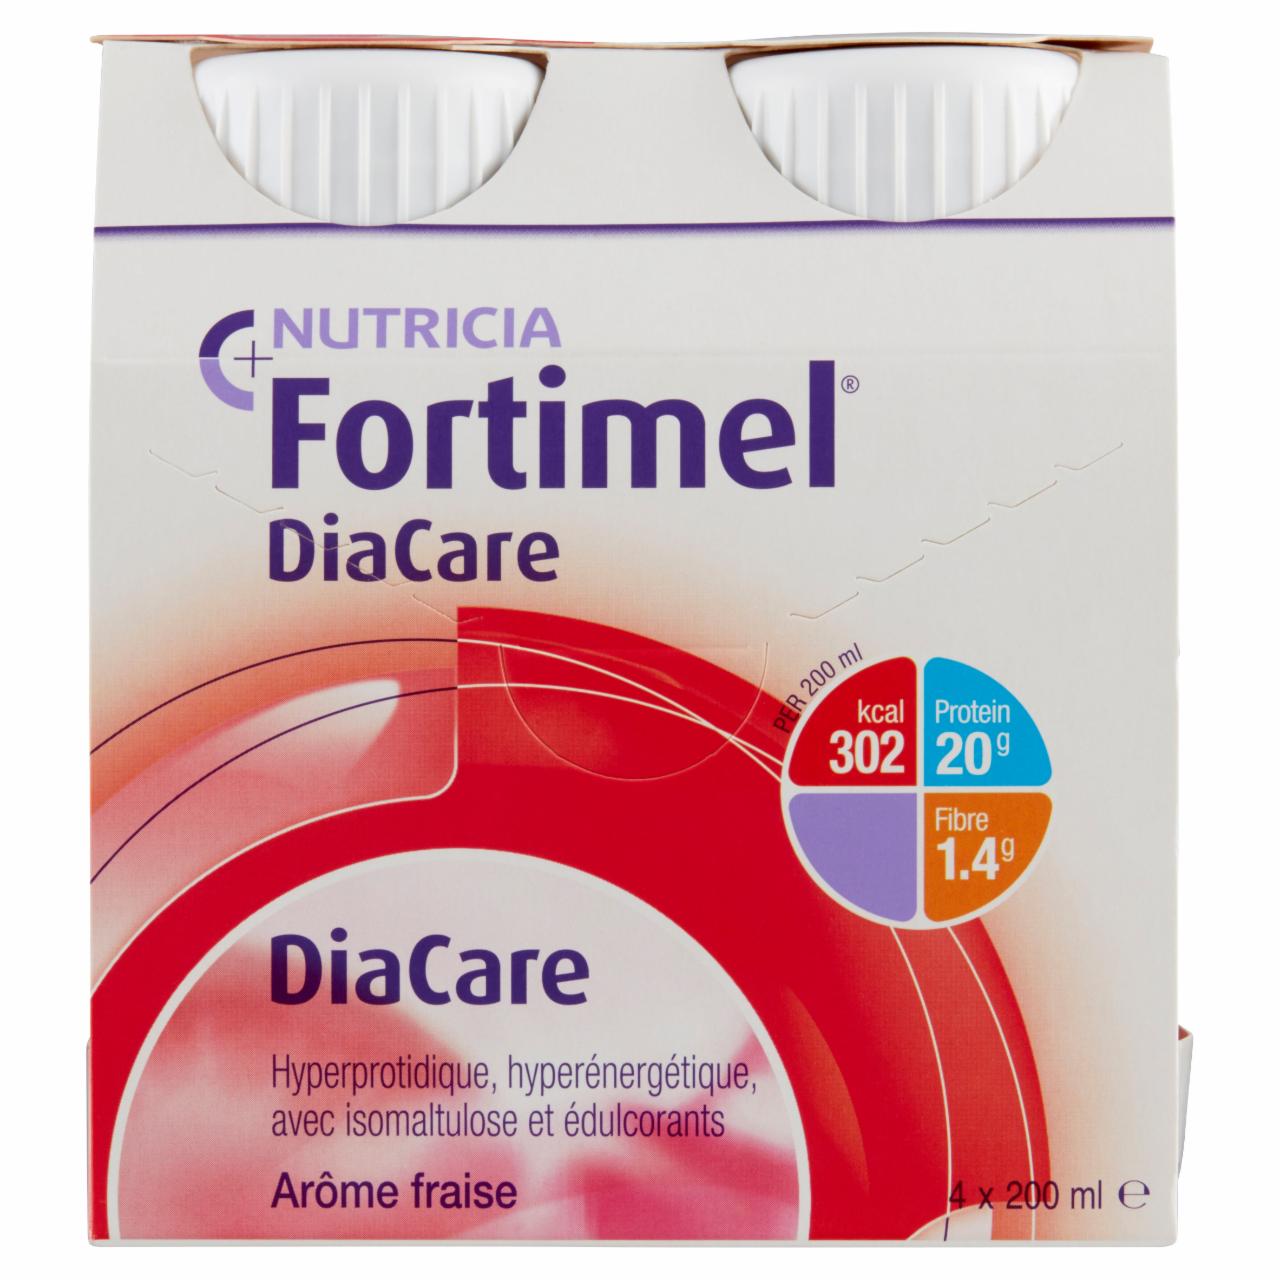 Képek - Fortimel DiaCare eper ízű speciális gyógyászati célra szánt élelmiszer 24 x 200 ml